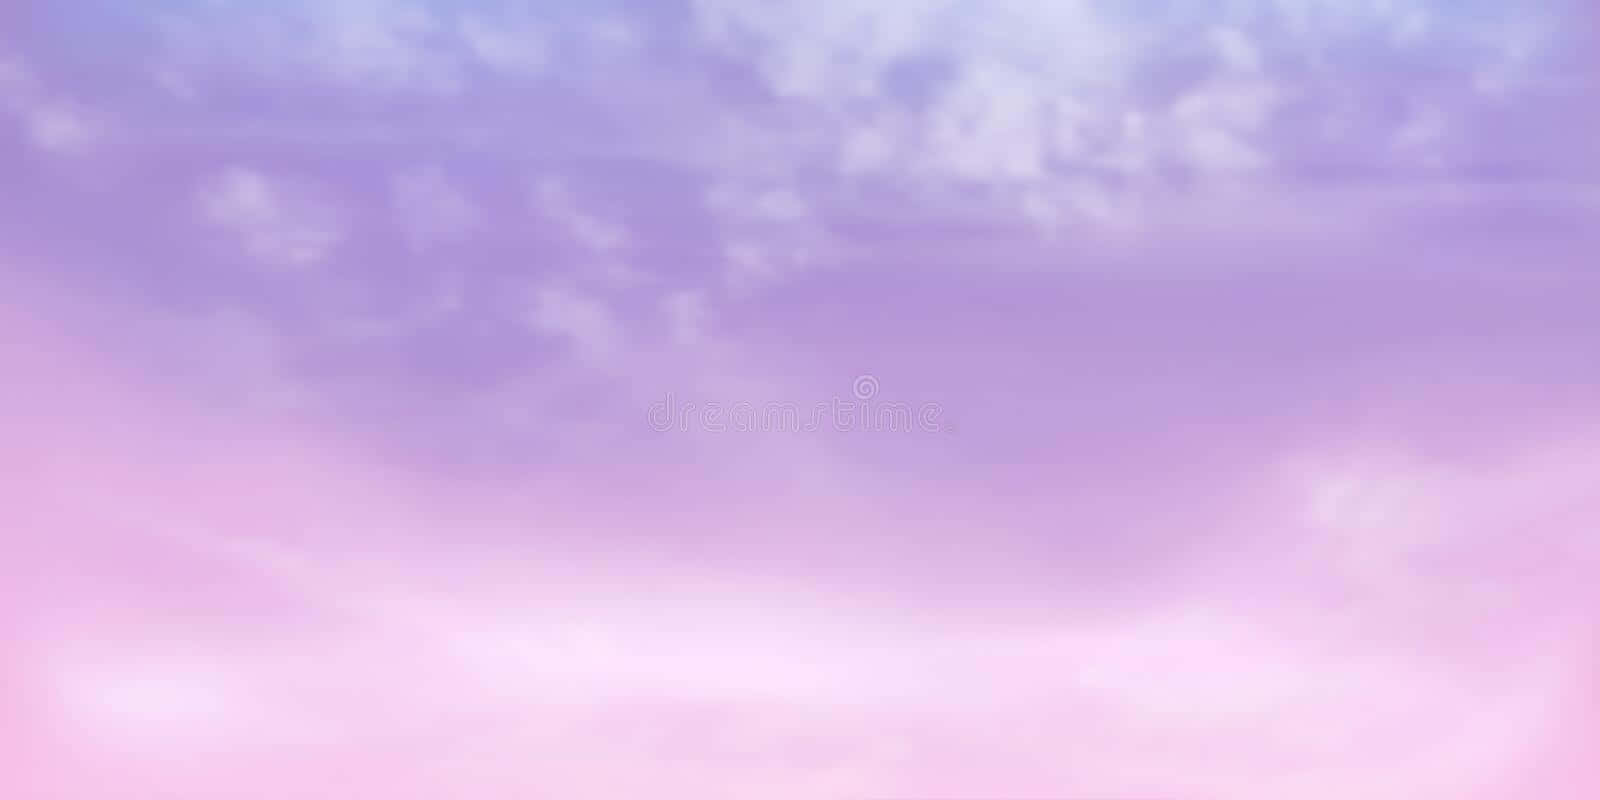 Einwunderschöner Pastellrosa Und Lila Sonnenaufgangshimmel. Wallpaper